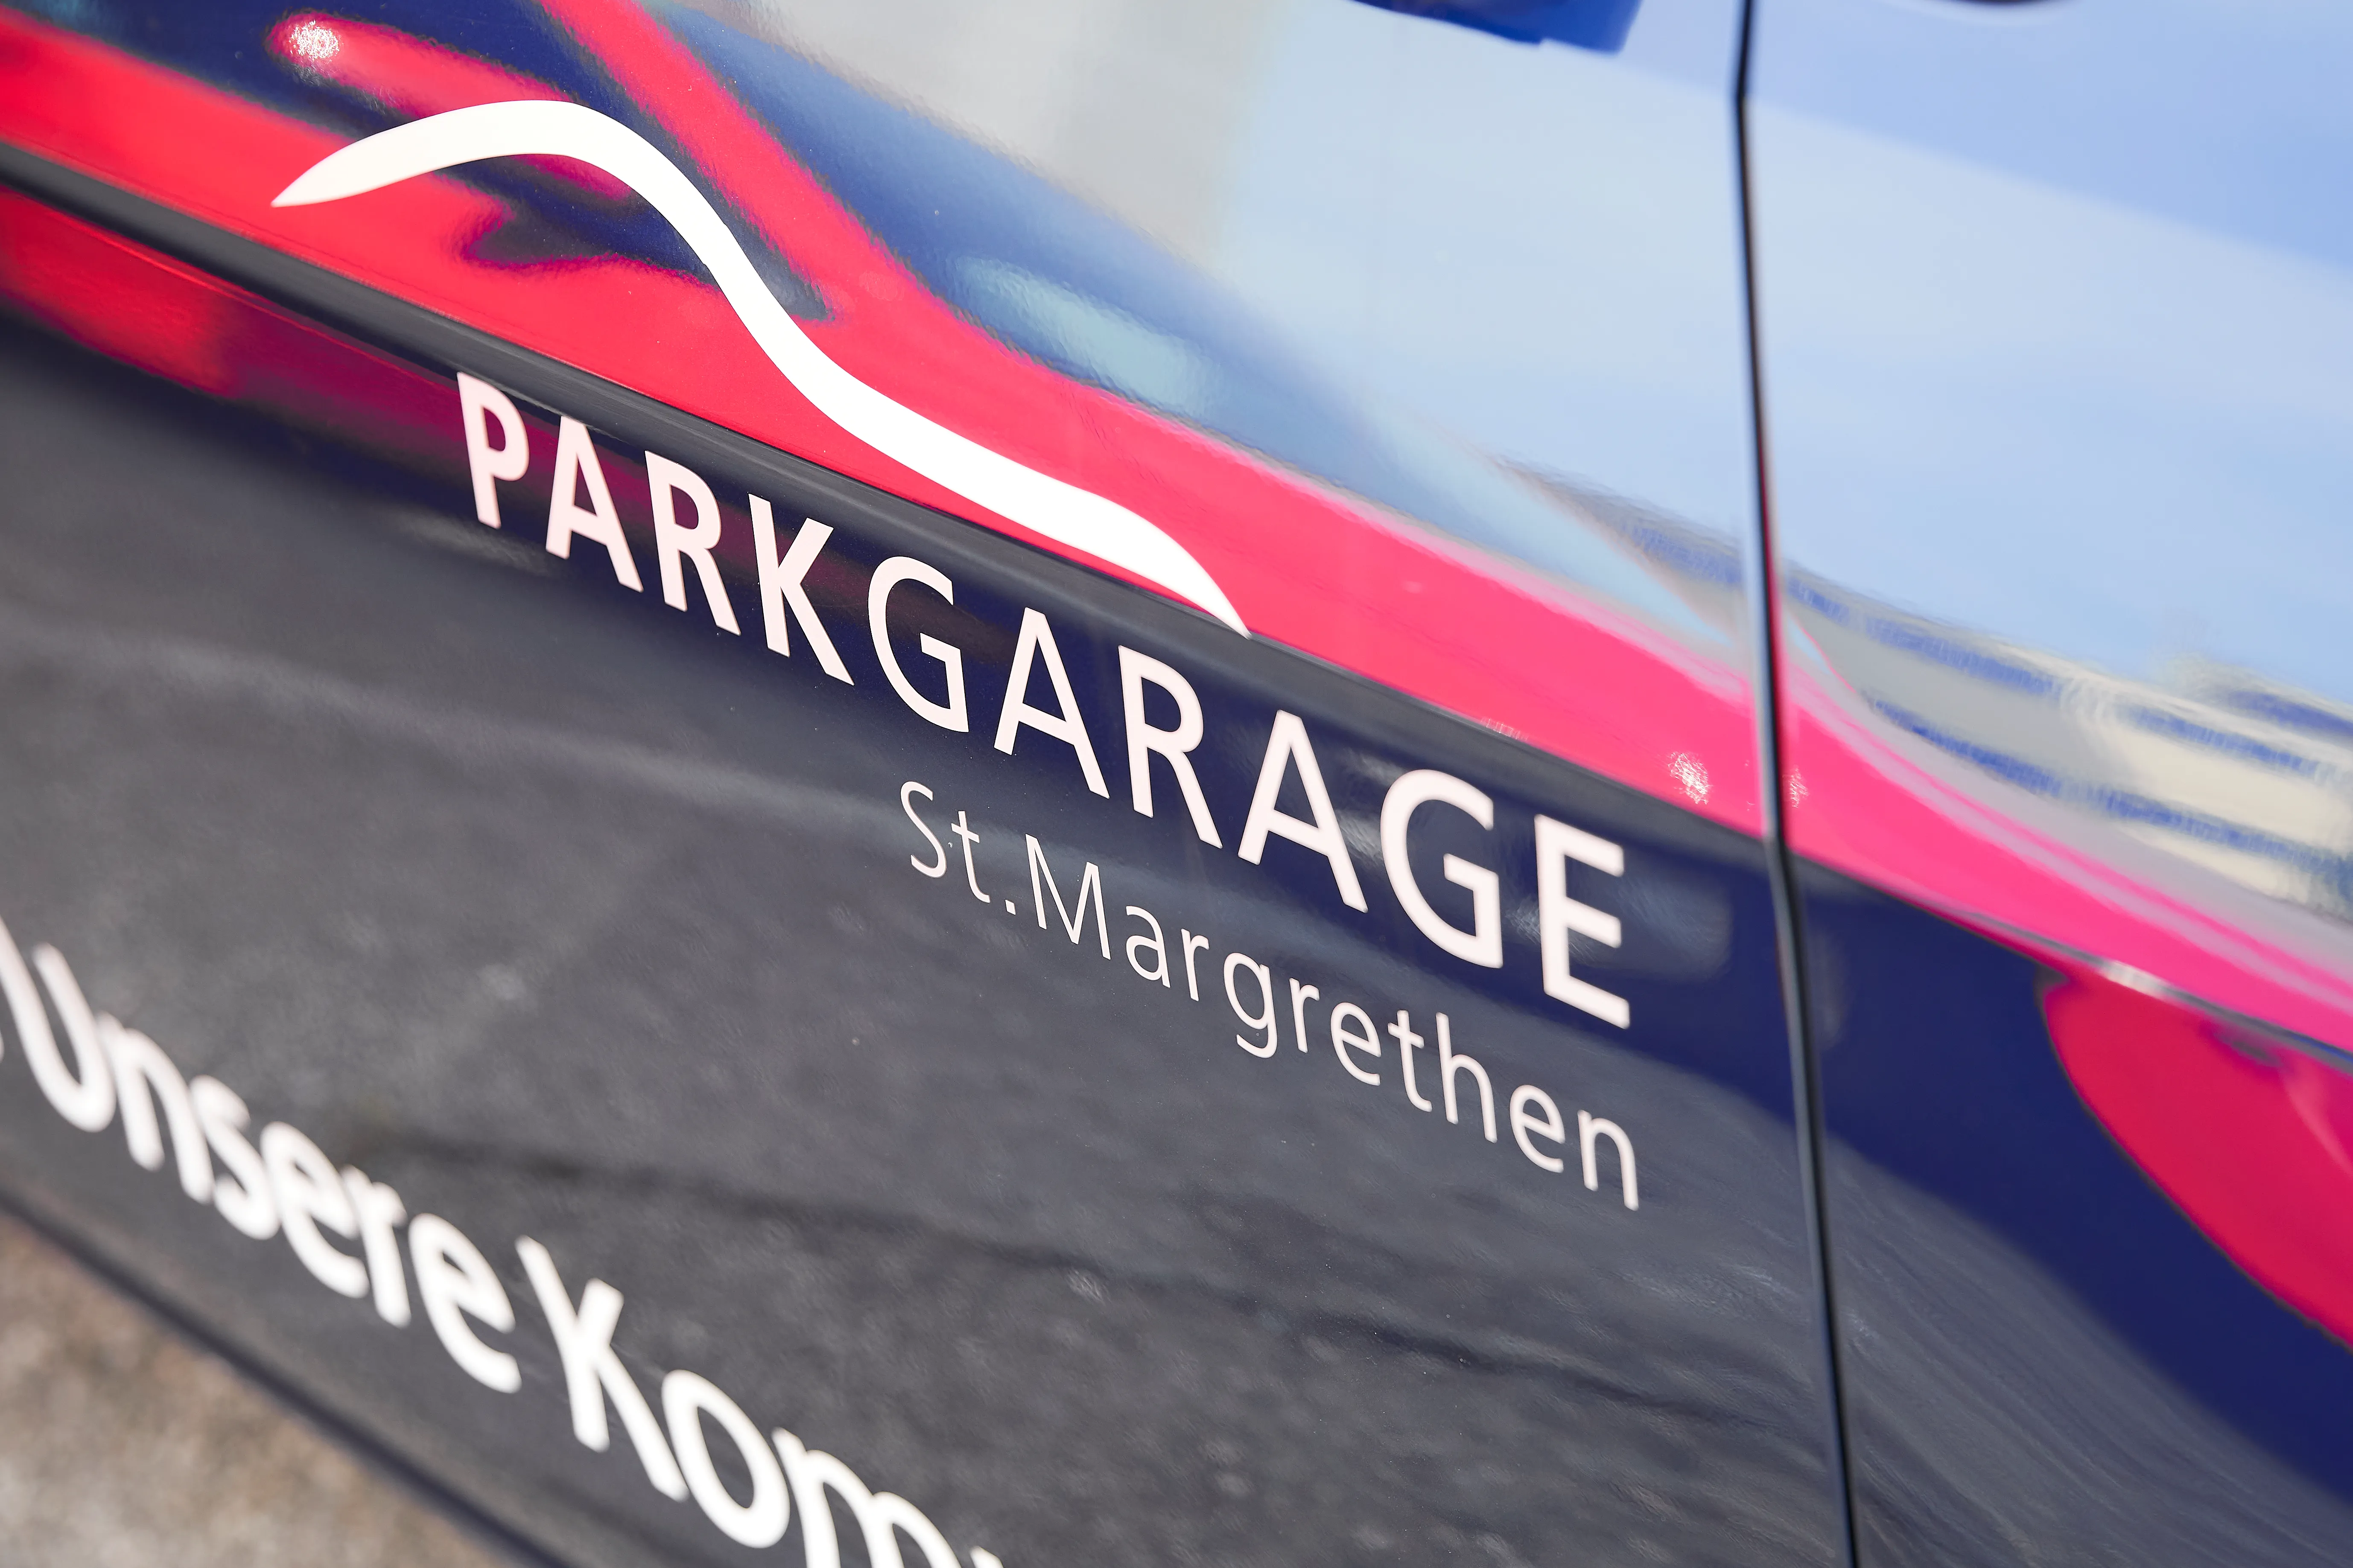 Parkgarage AG St. Margrethen